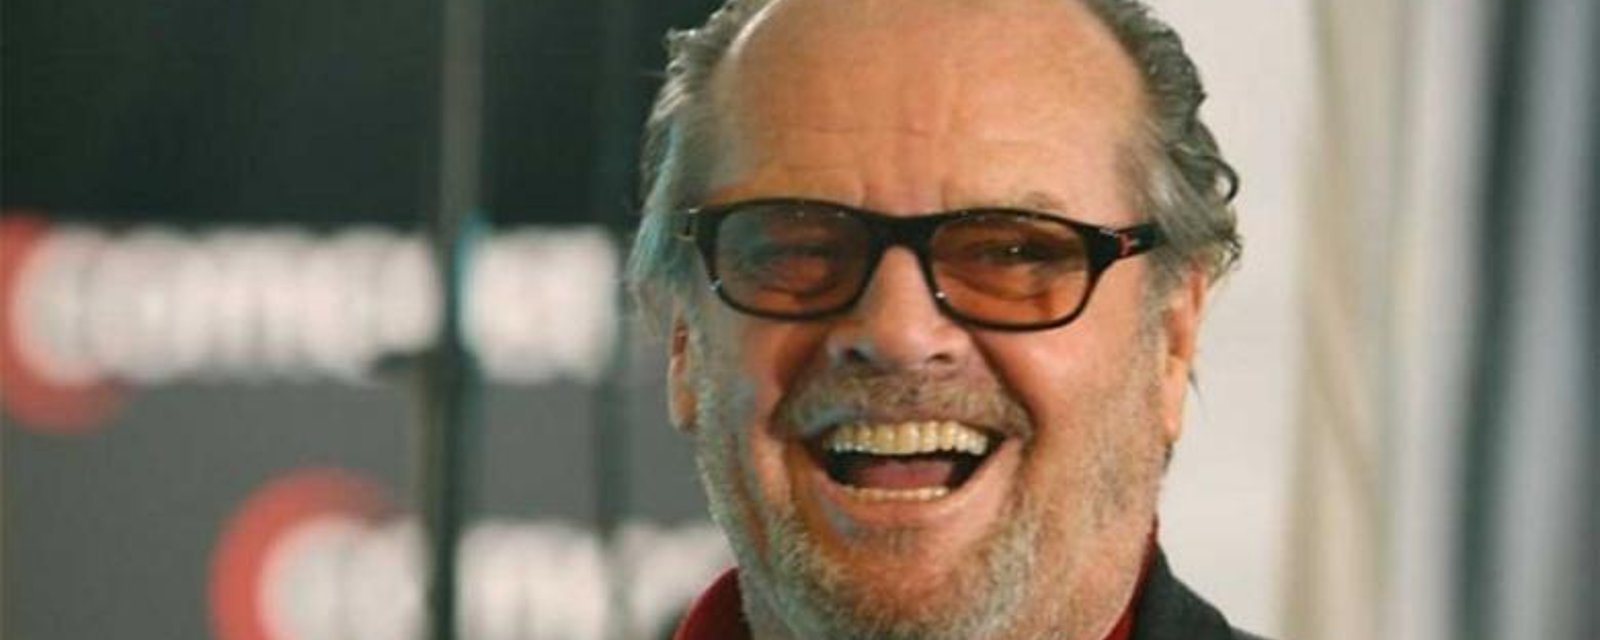 Le fils de Jack Nicholson est la copie conforme de son père... et il est HOT!